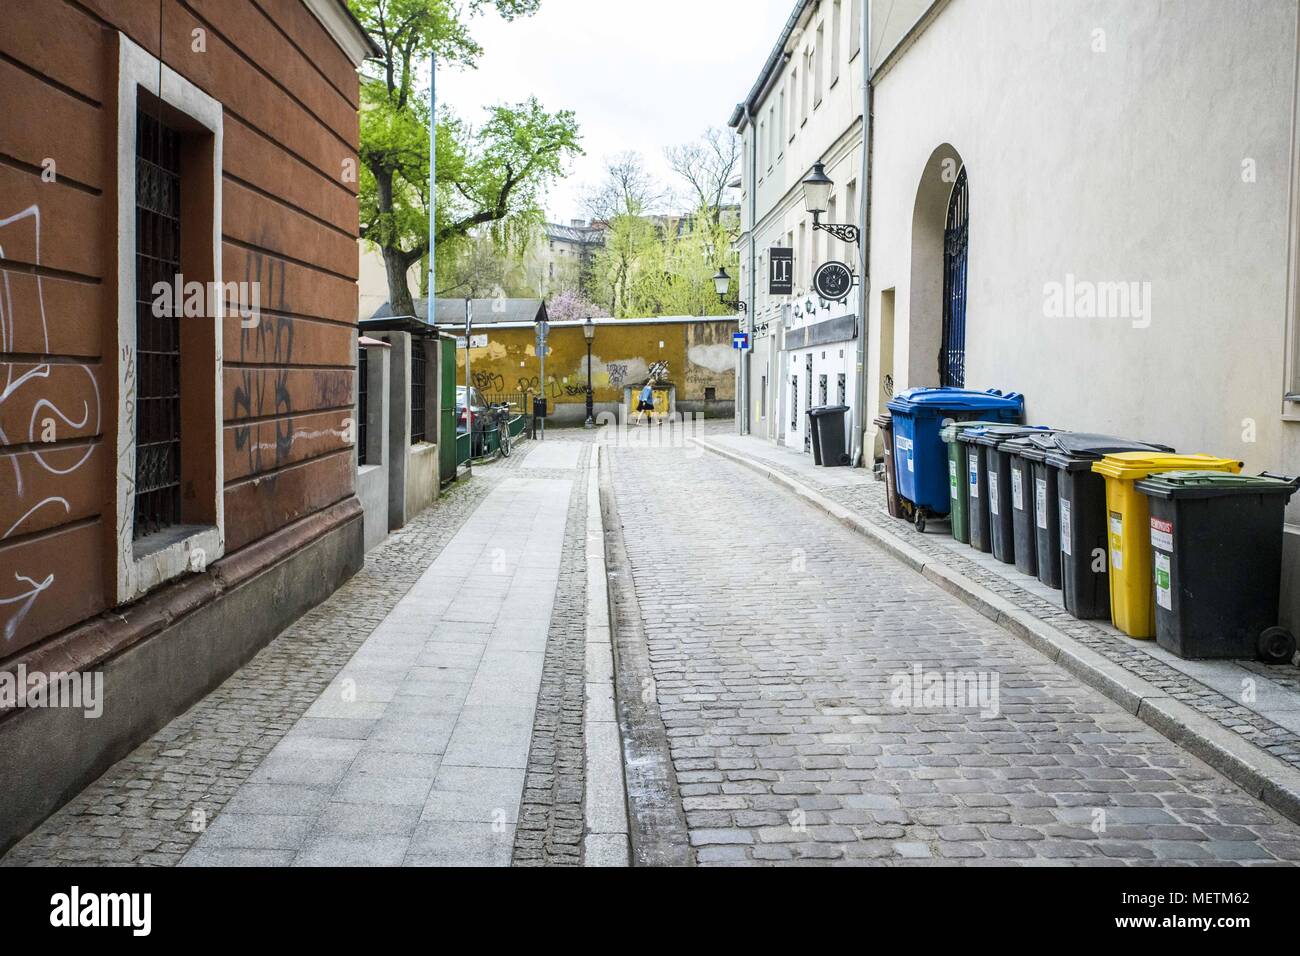 Poznan, Wielkopolska, Poland. 16th Apr, 2018. The everyday life in a large Polish city - the old town. Credit: Dawid Tatarkiewicz/ZUMA Wire/Alamy Live News Stock Photo